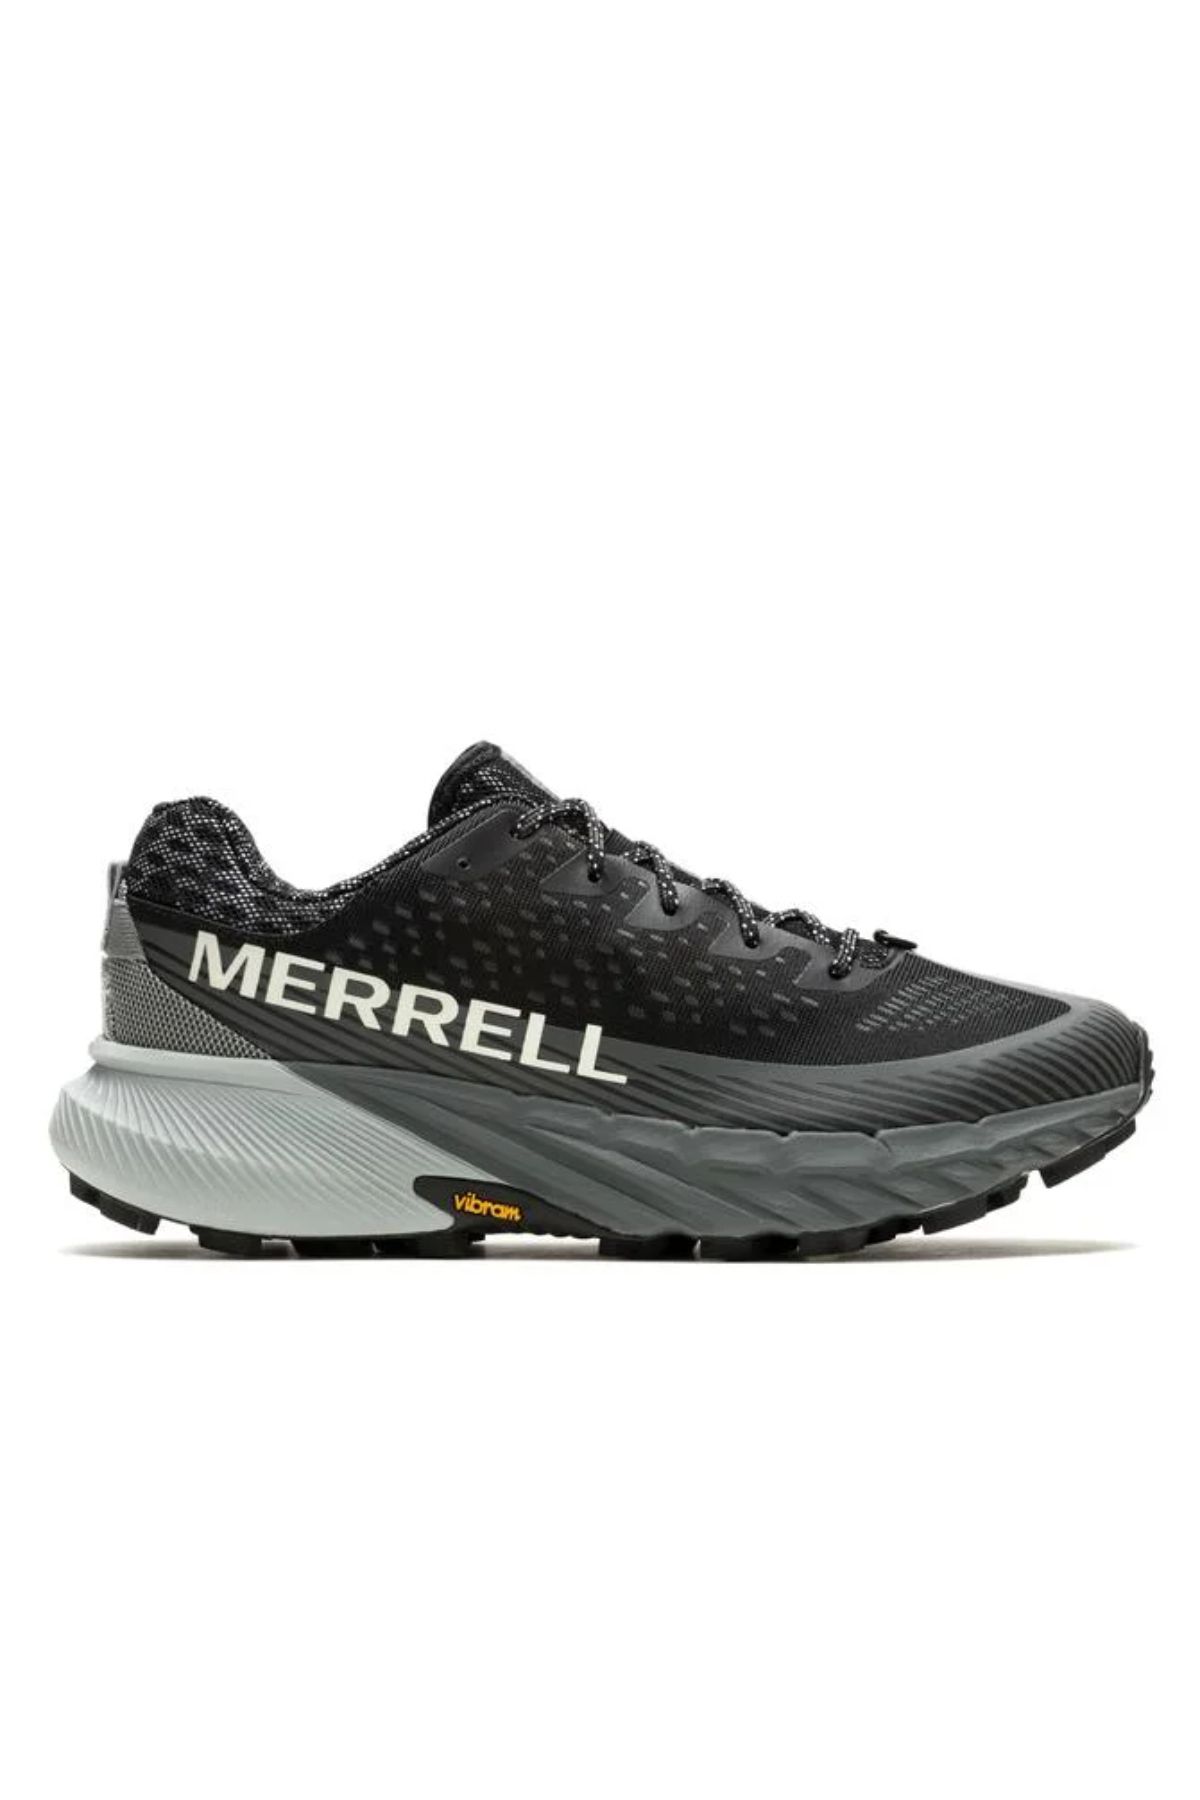 Merrell J067759 Agılıty Peak 5 Erkek Spor Ayakkabısı Siyah Gri